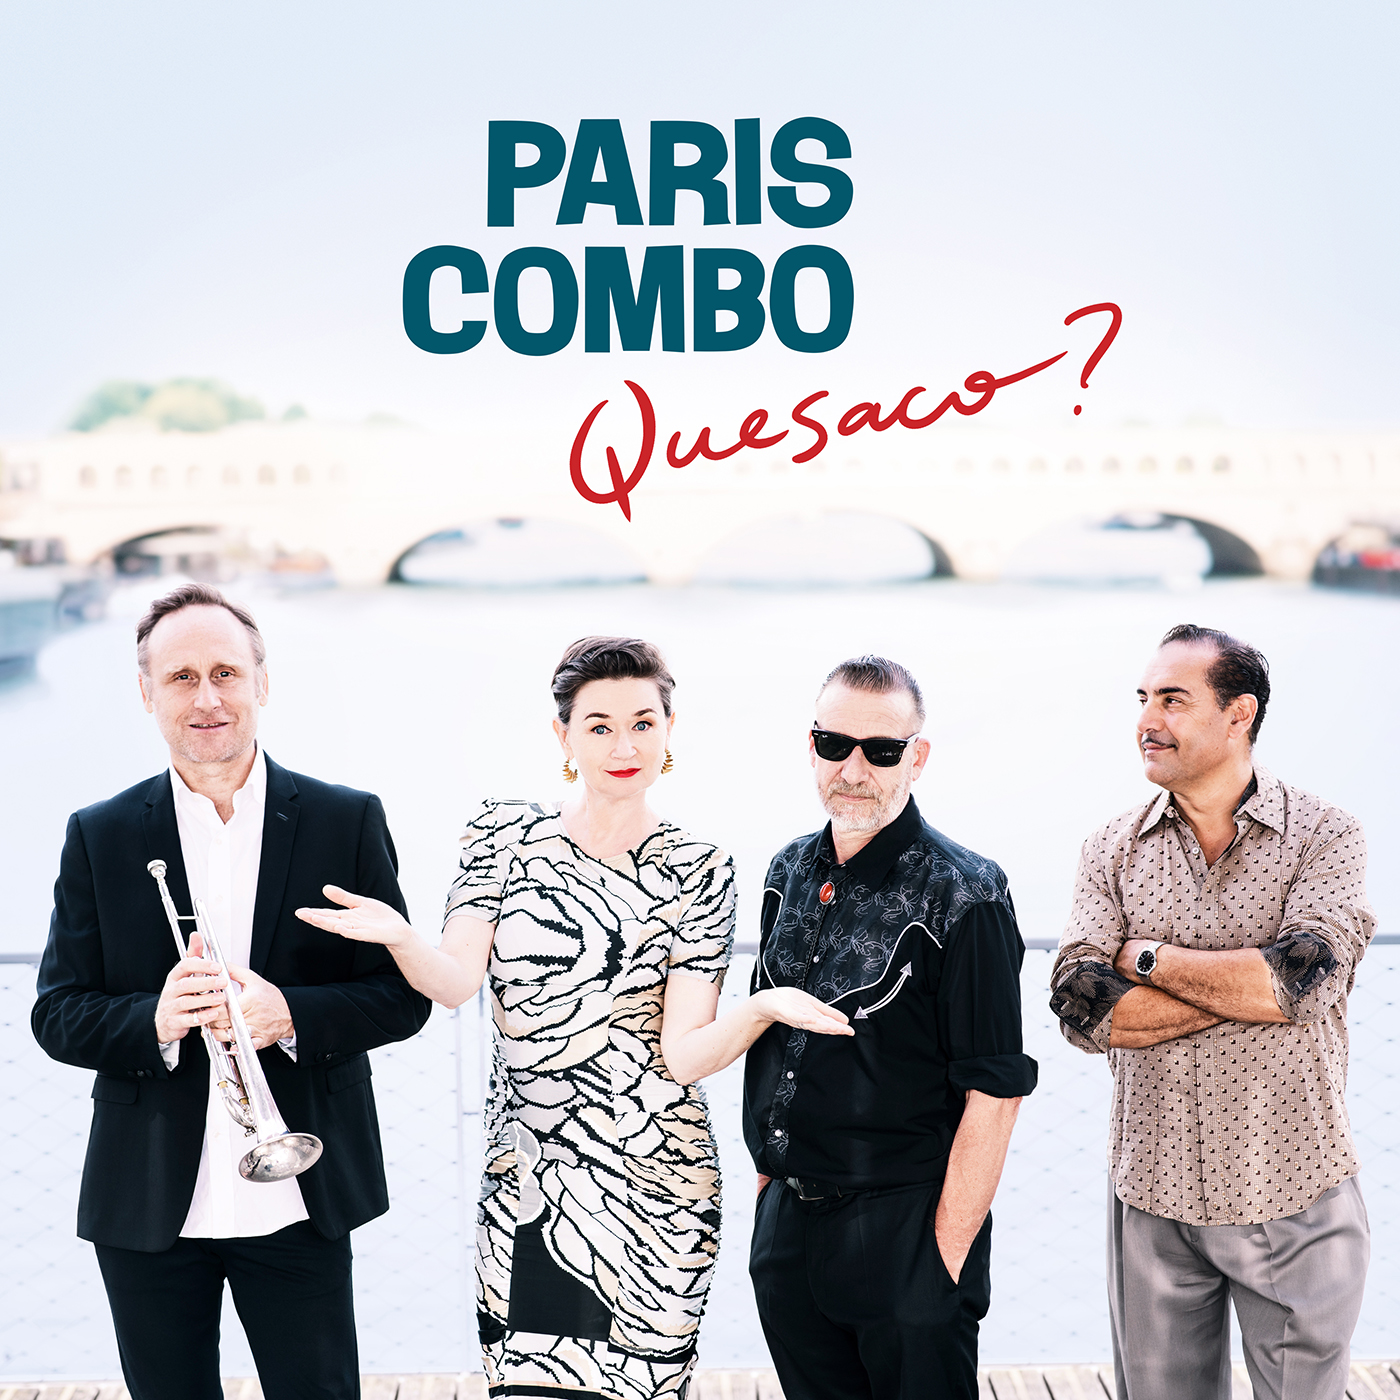 Paris Combo sort son nouvel album Quesaco ?